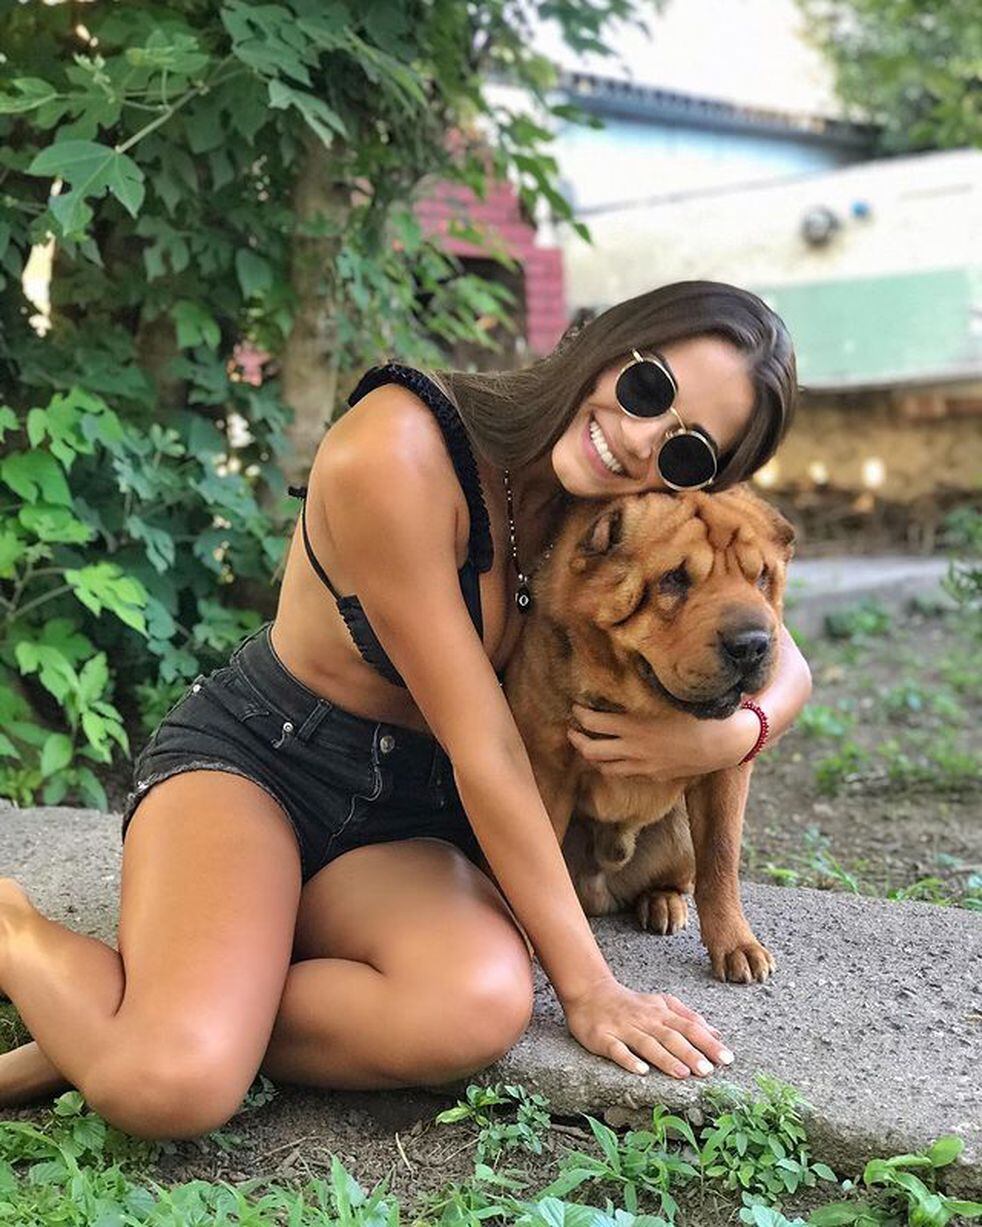 Gina Casinelli compartió unas tiernas fotos con su perro. (Foto: Instagram)